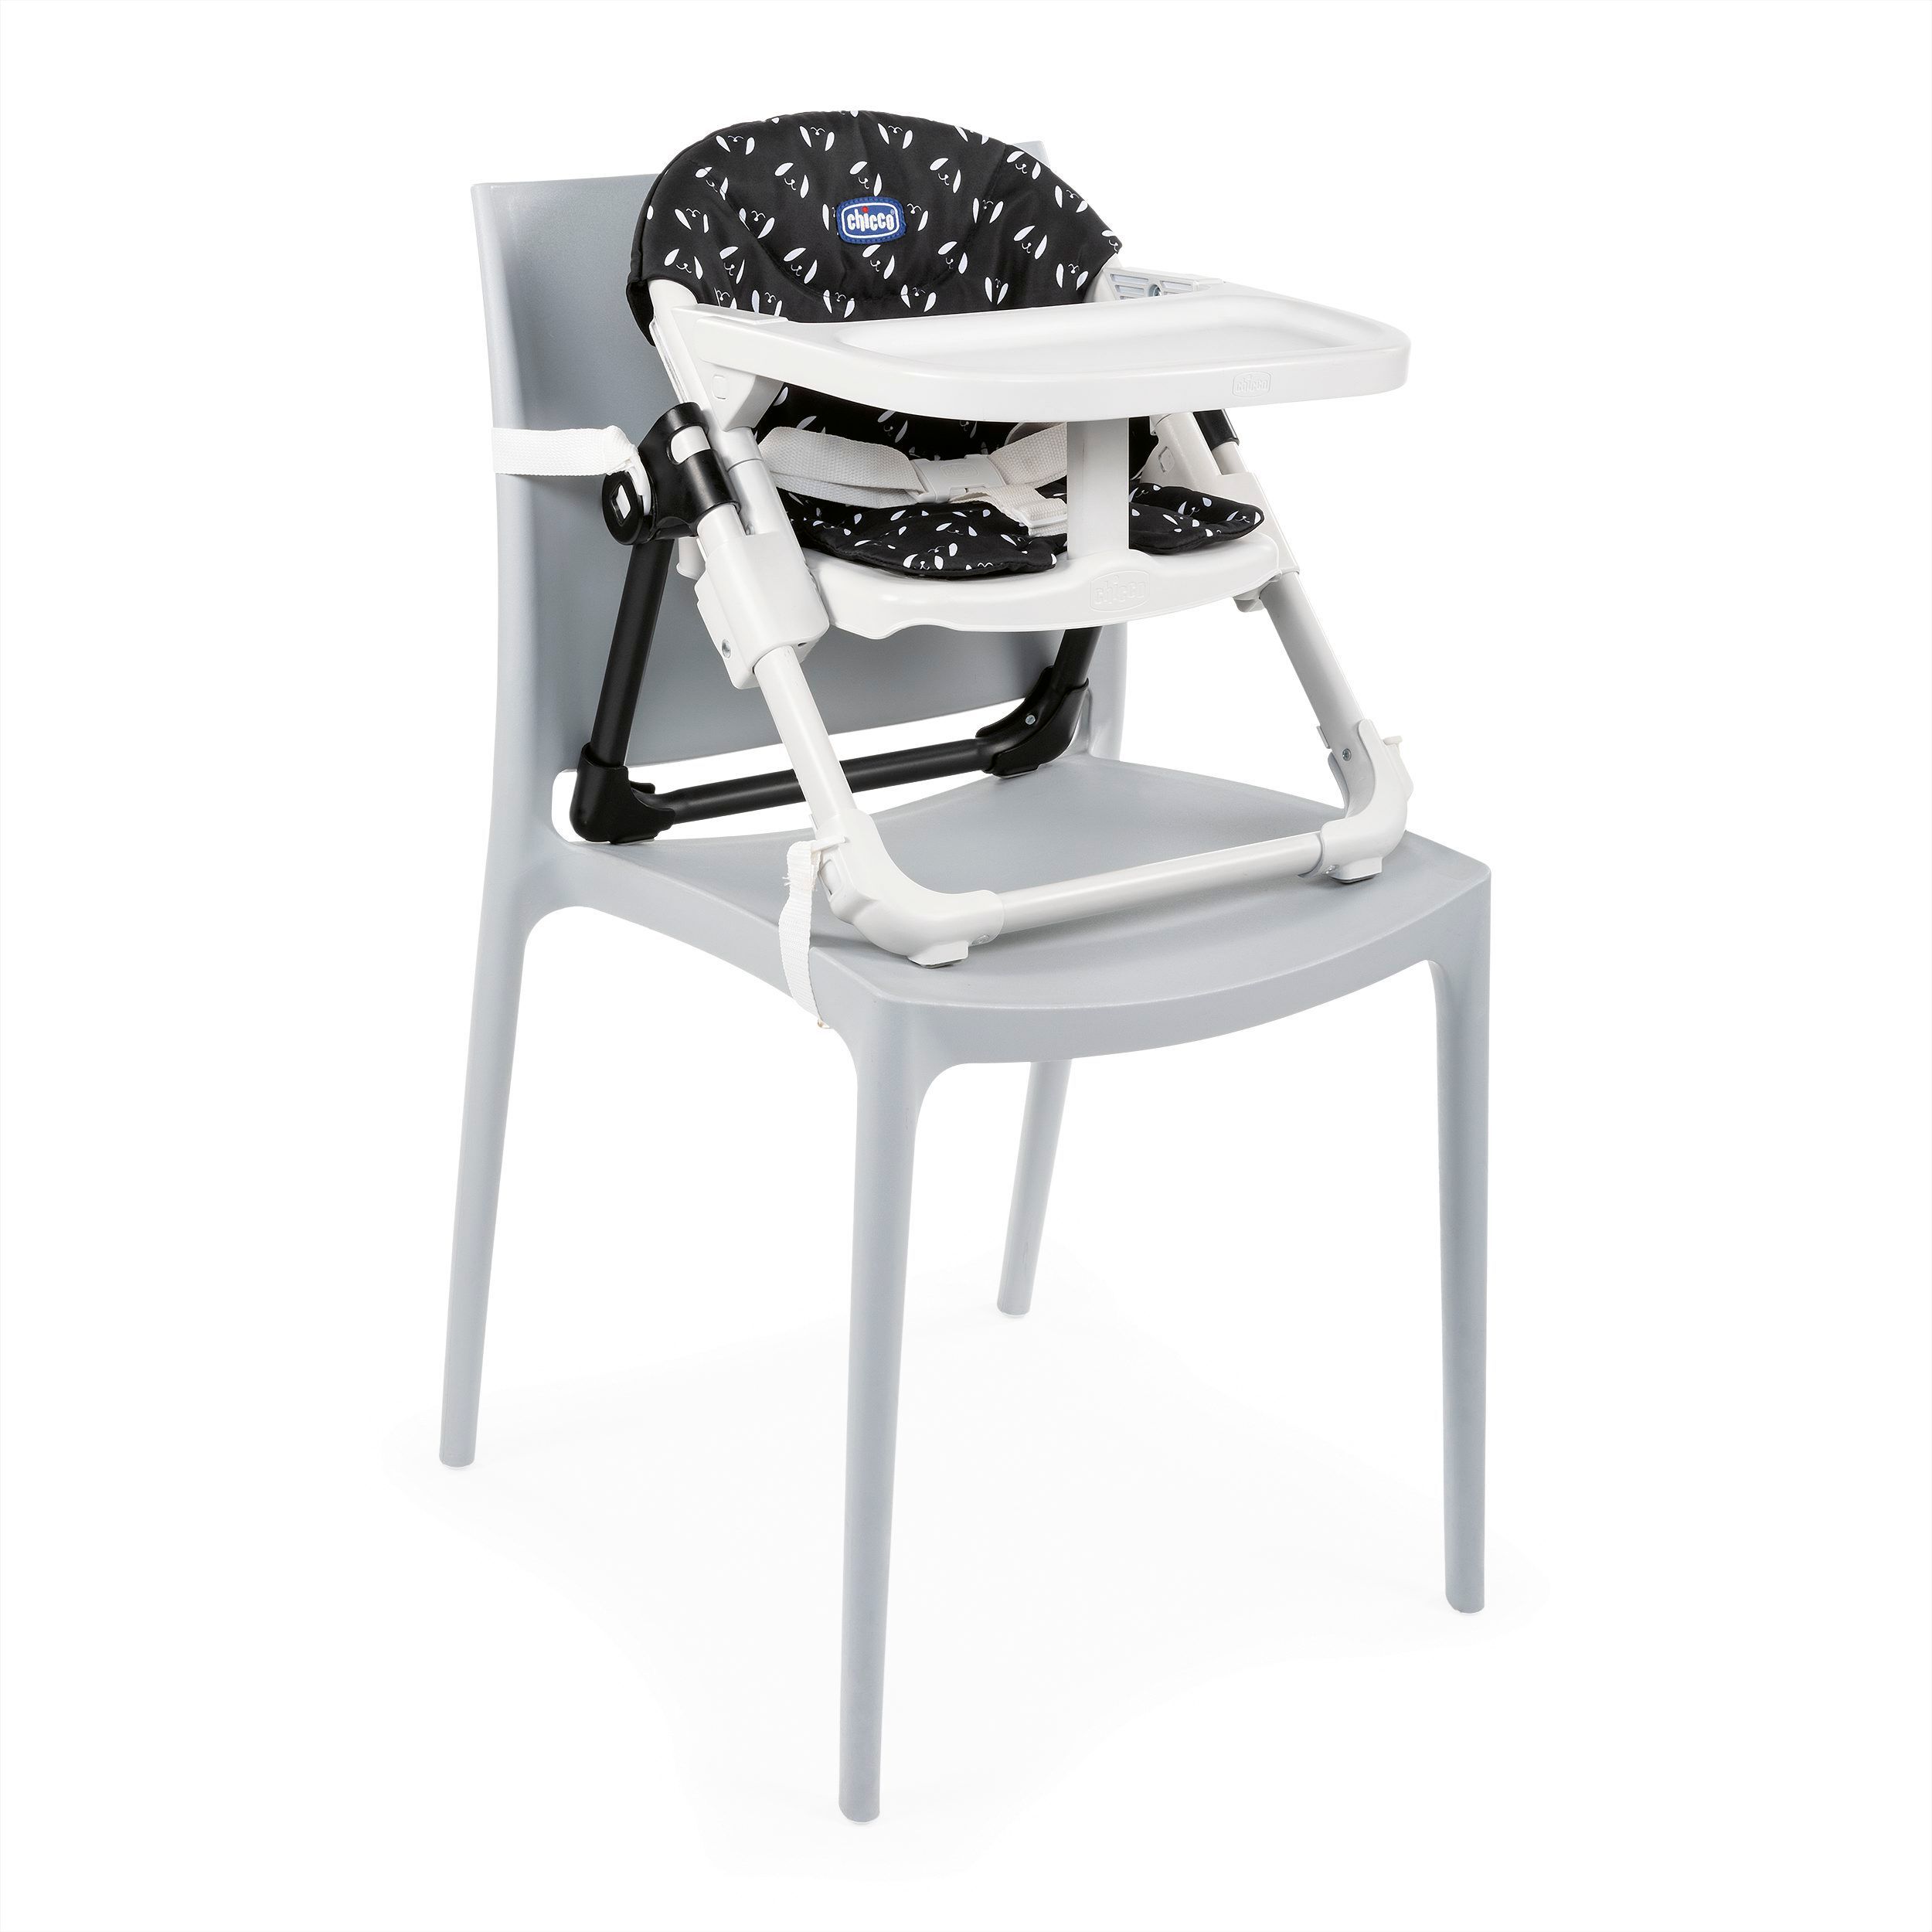 6-36 meses Sweetdog Elevador asiento de silla regulable 4 posiciones color azul marino estampado perros Chicco Chairy ligero y transportable 